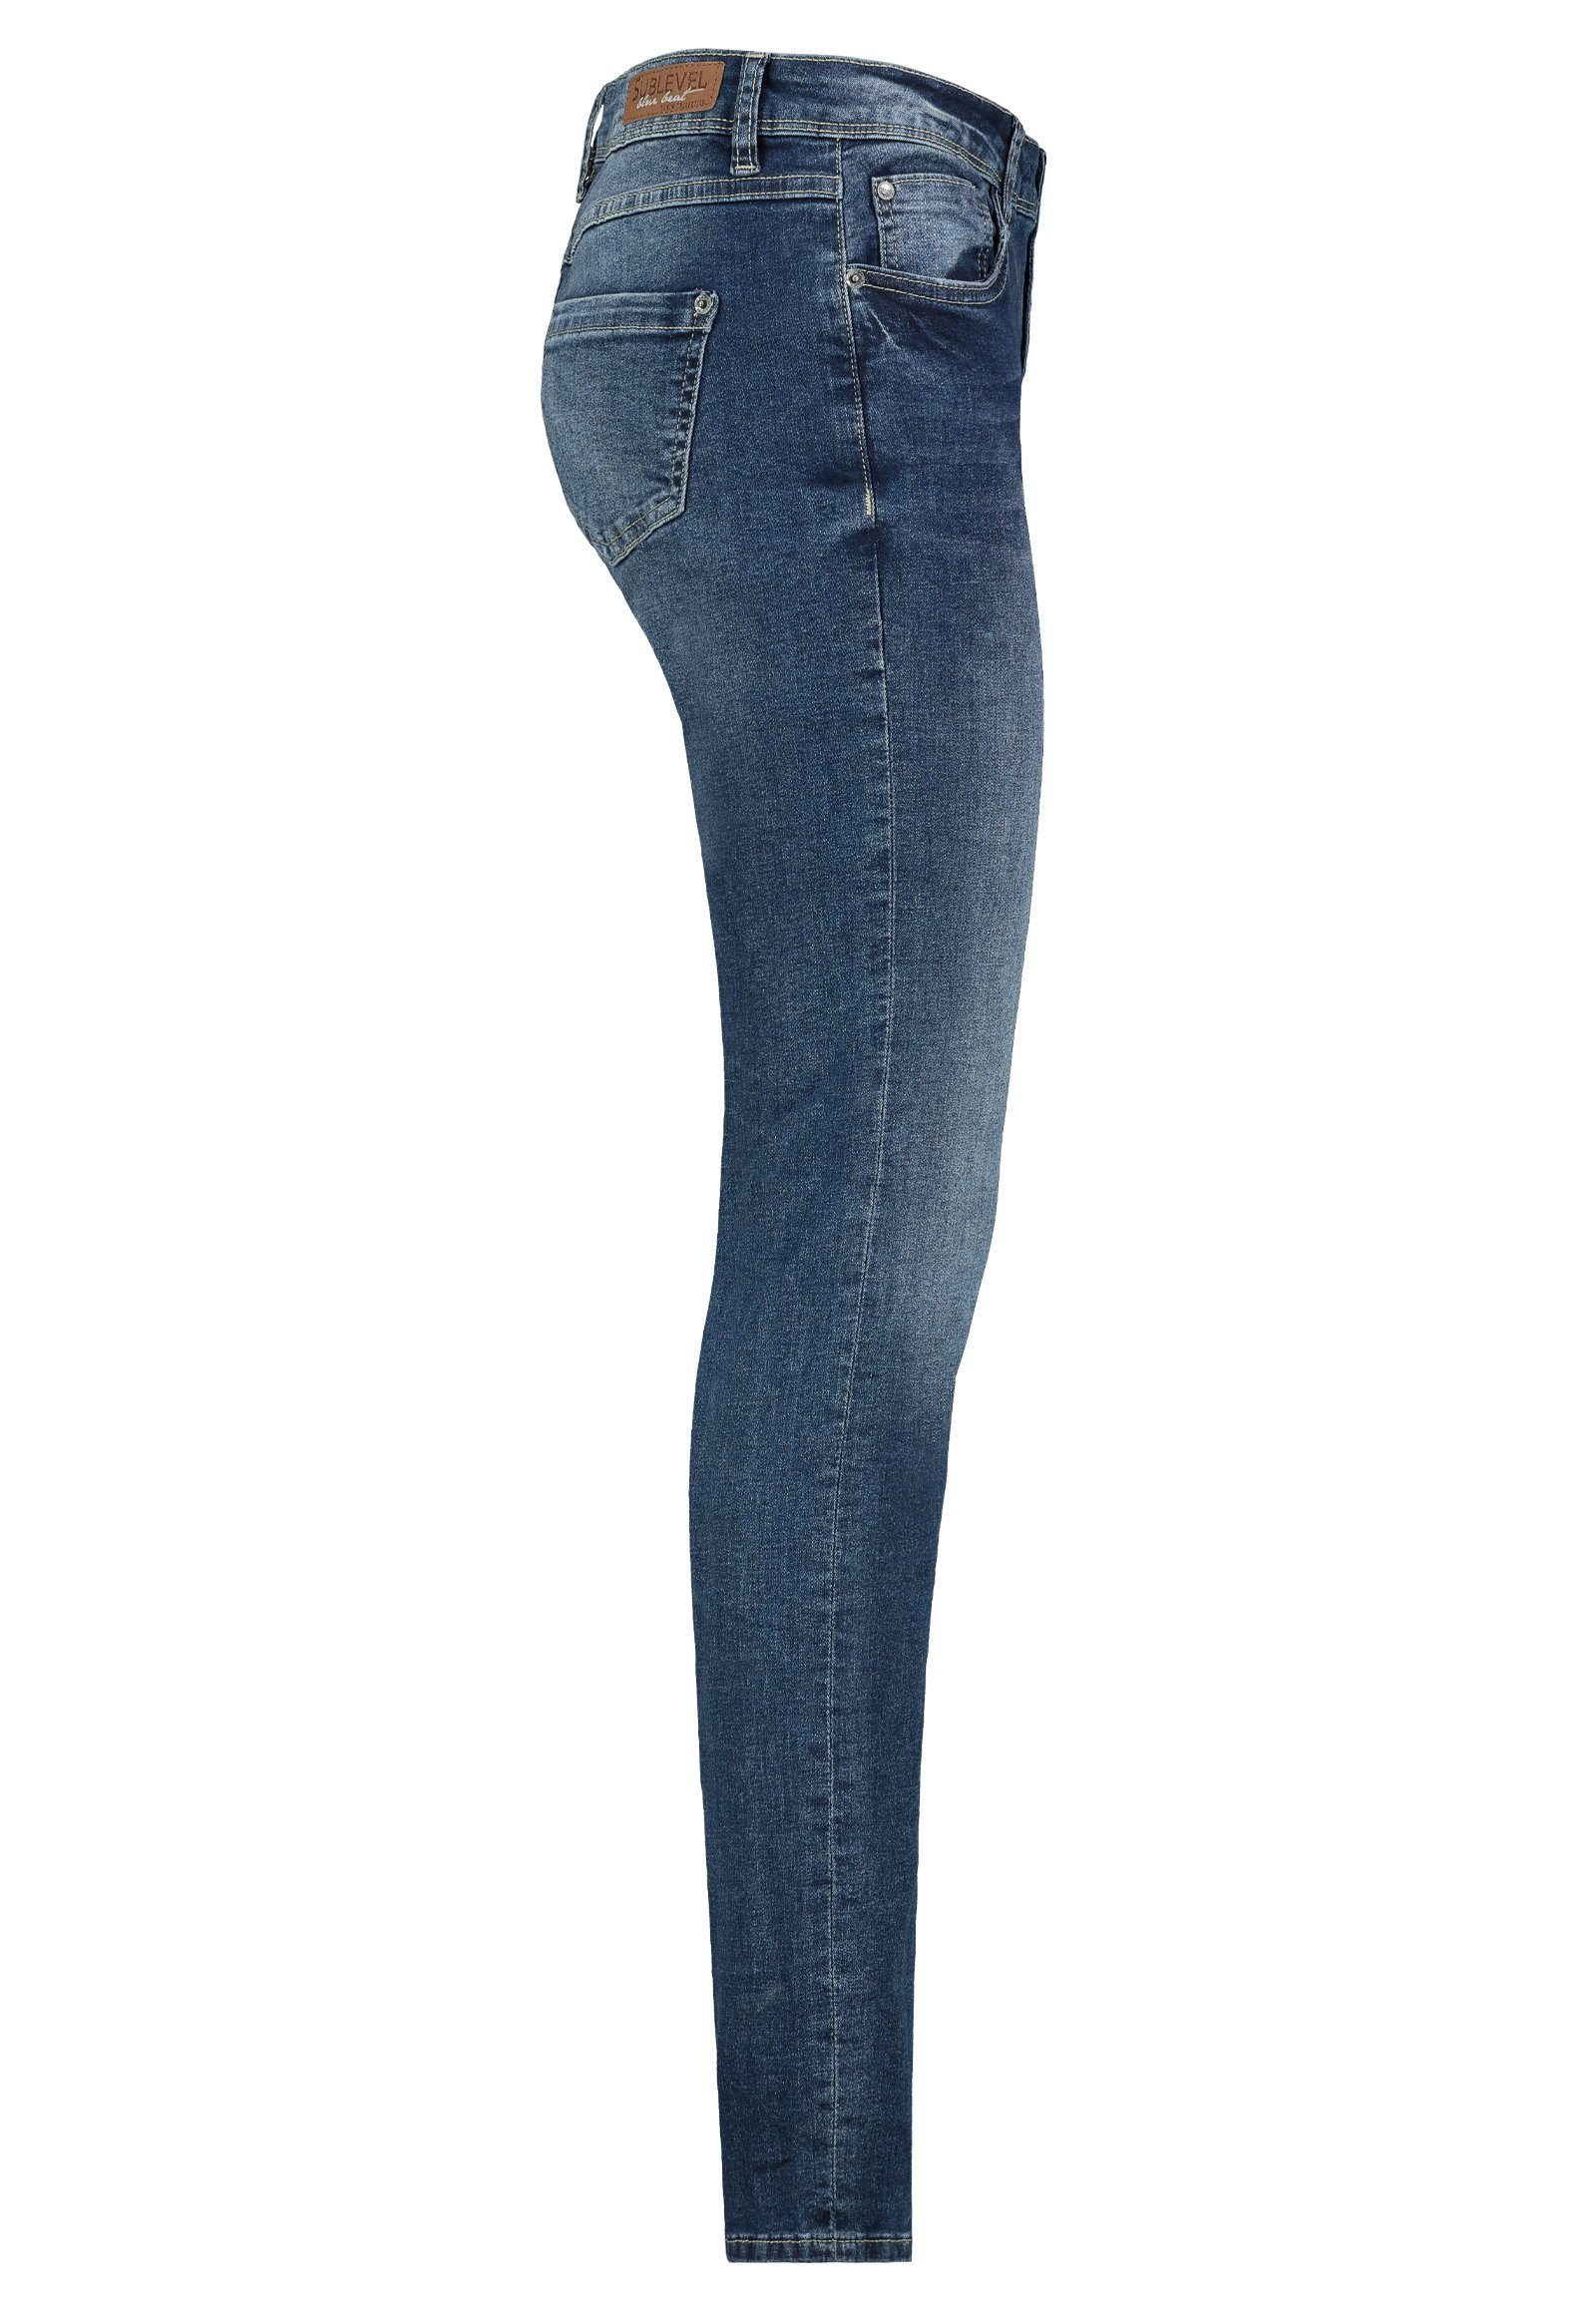 Hose Blue Middle Röhre Denim Slim-fit-Jeans Jeans Fit Slim SUBLEVEL Hose Jeanshose Damen Sublevel Stretch